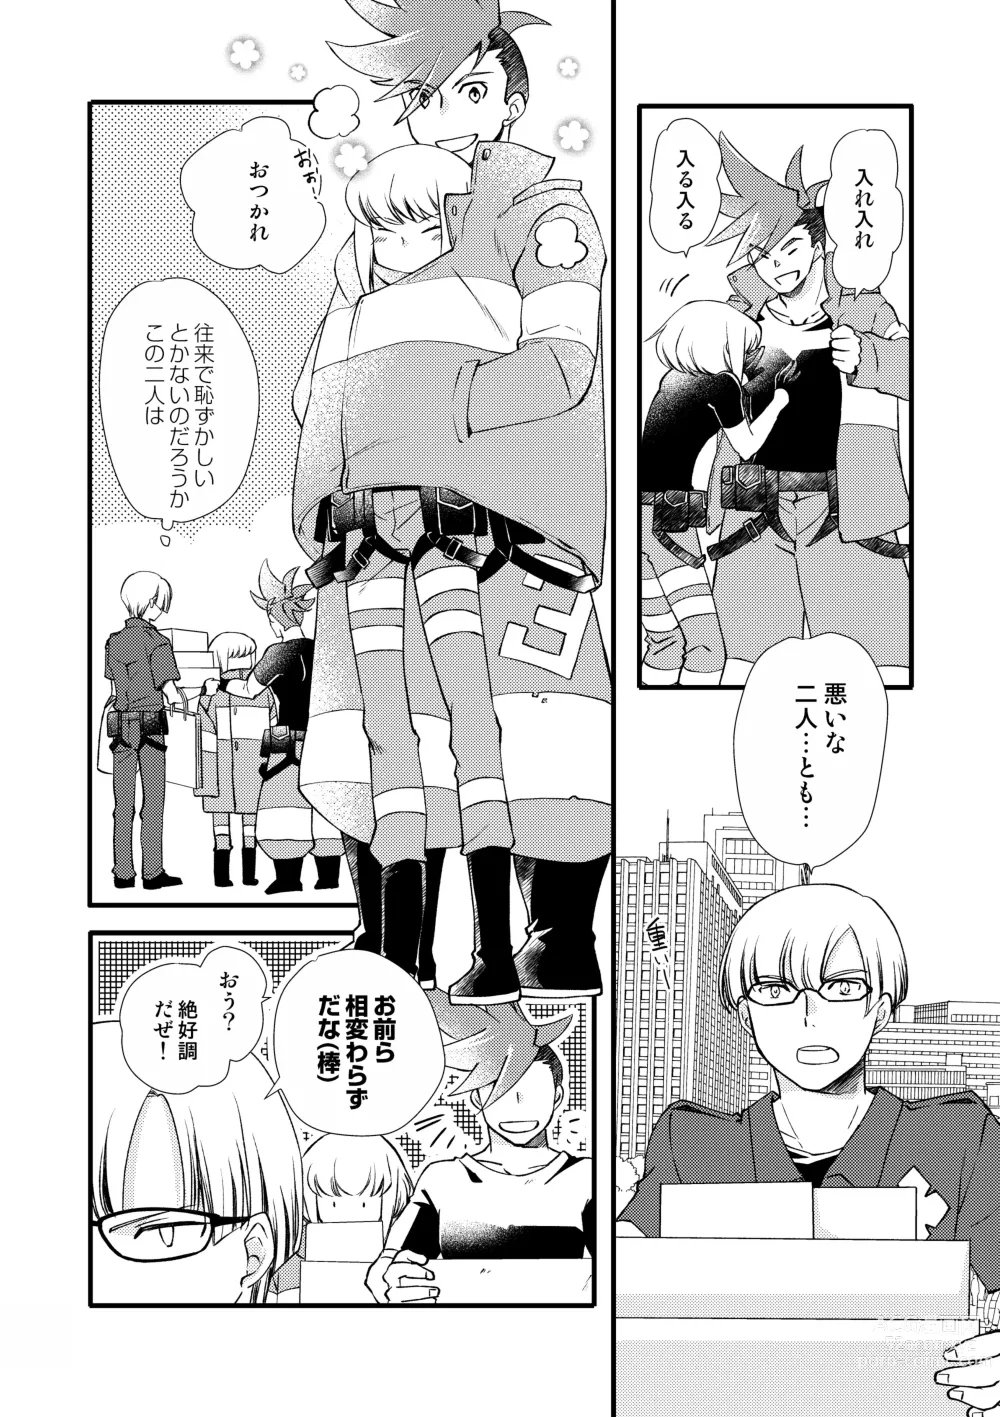 Page 5 of doujinshi Sekai wa Onchi na Utagoe de